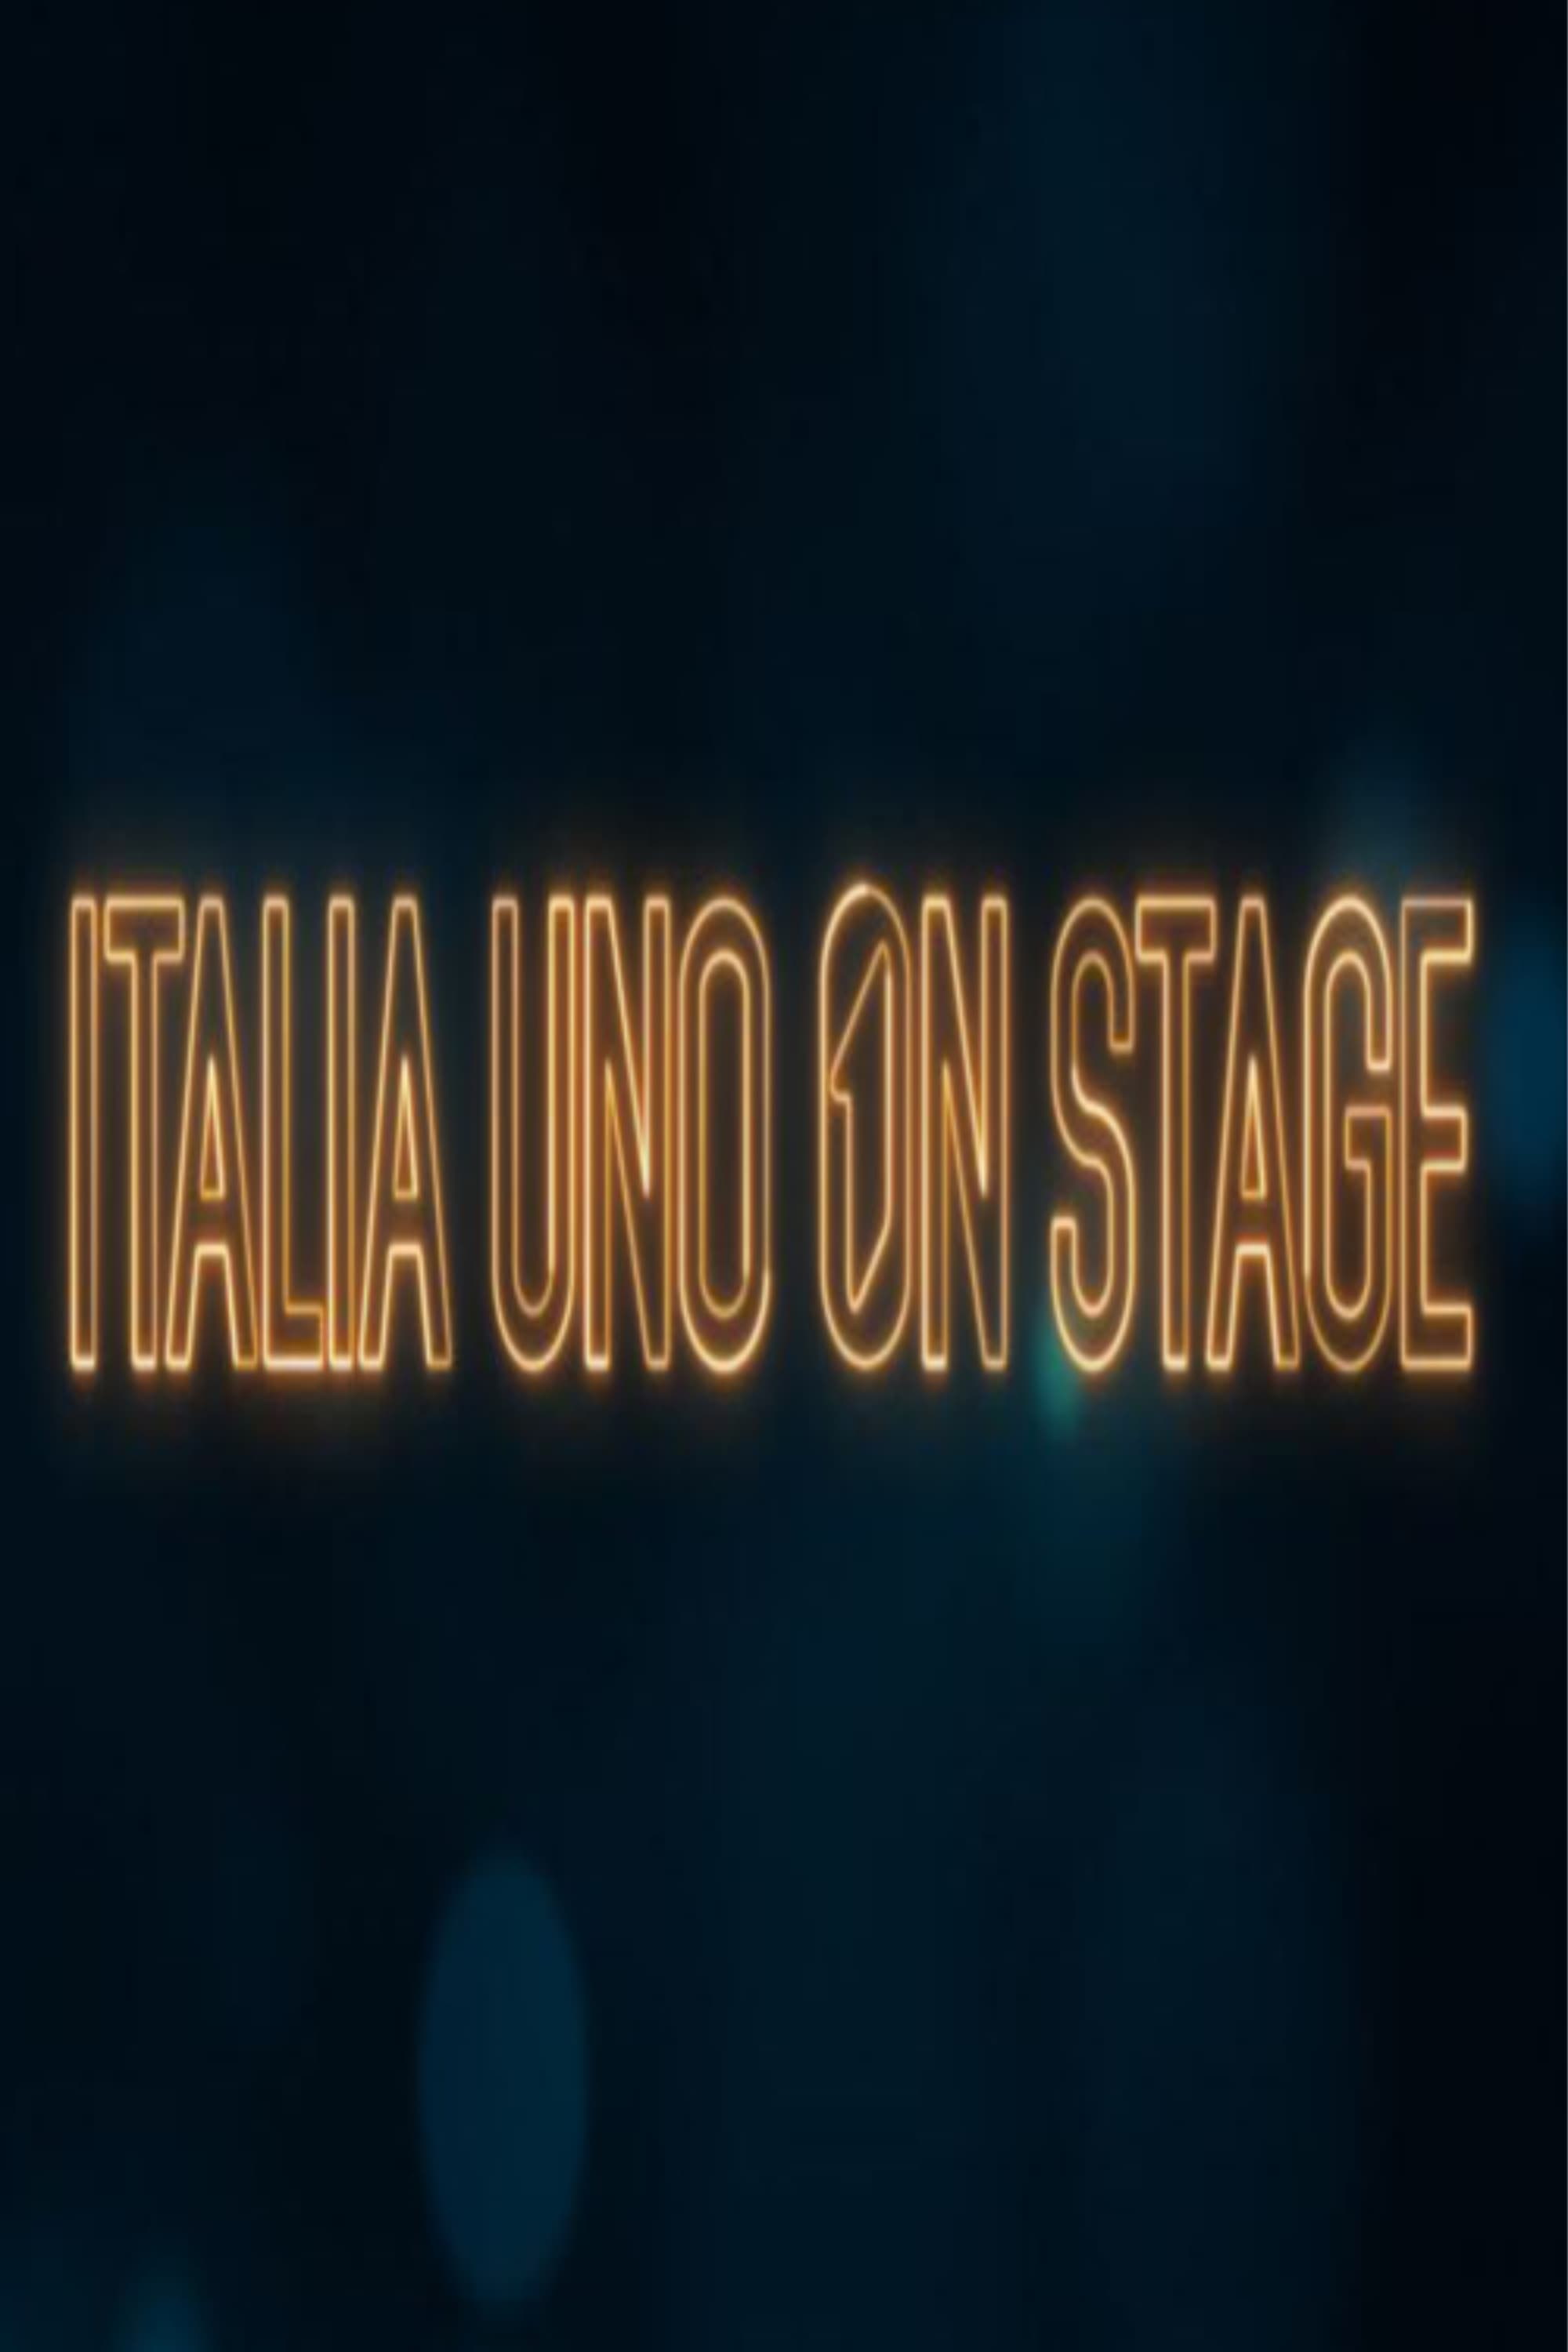 Italia Uno on stage